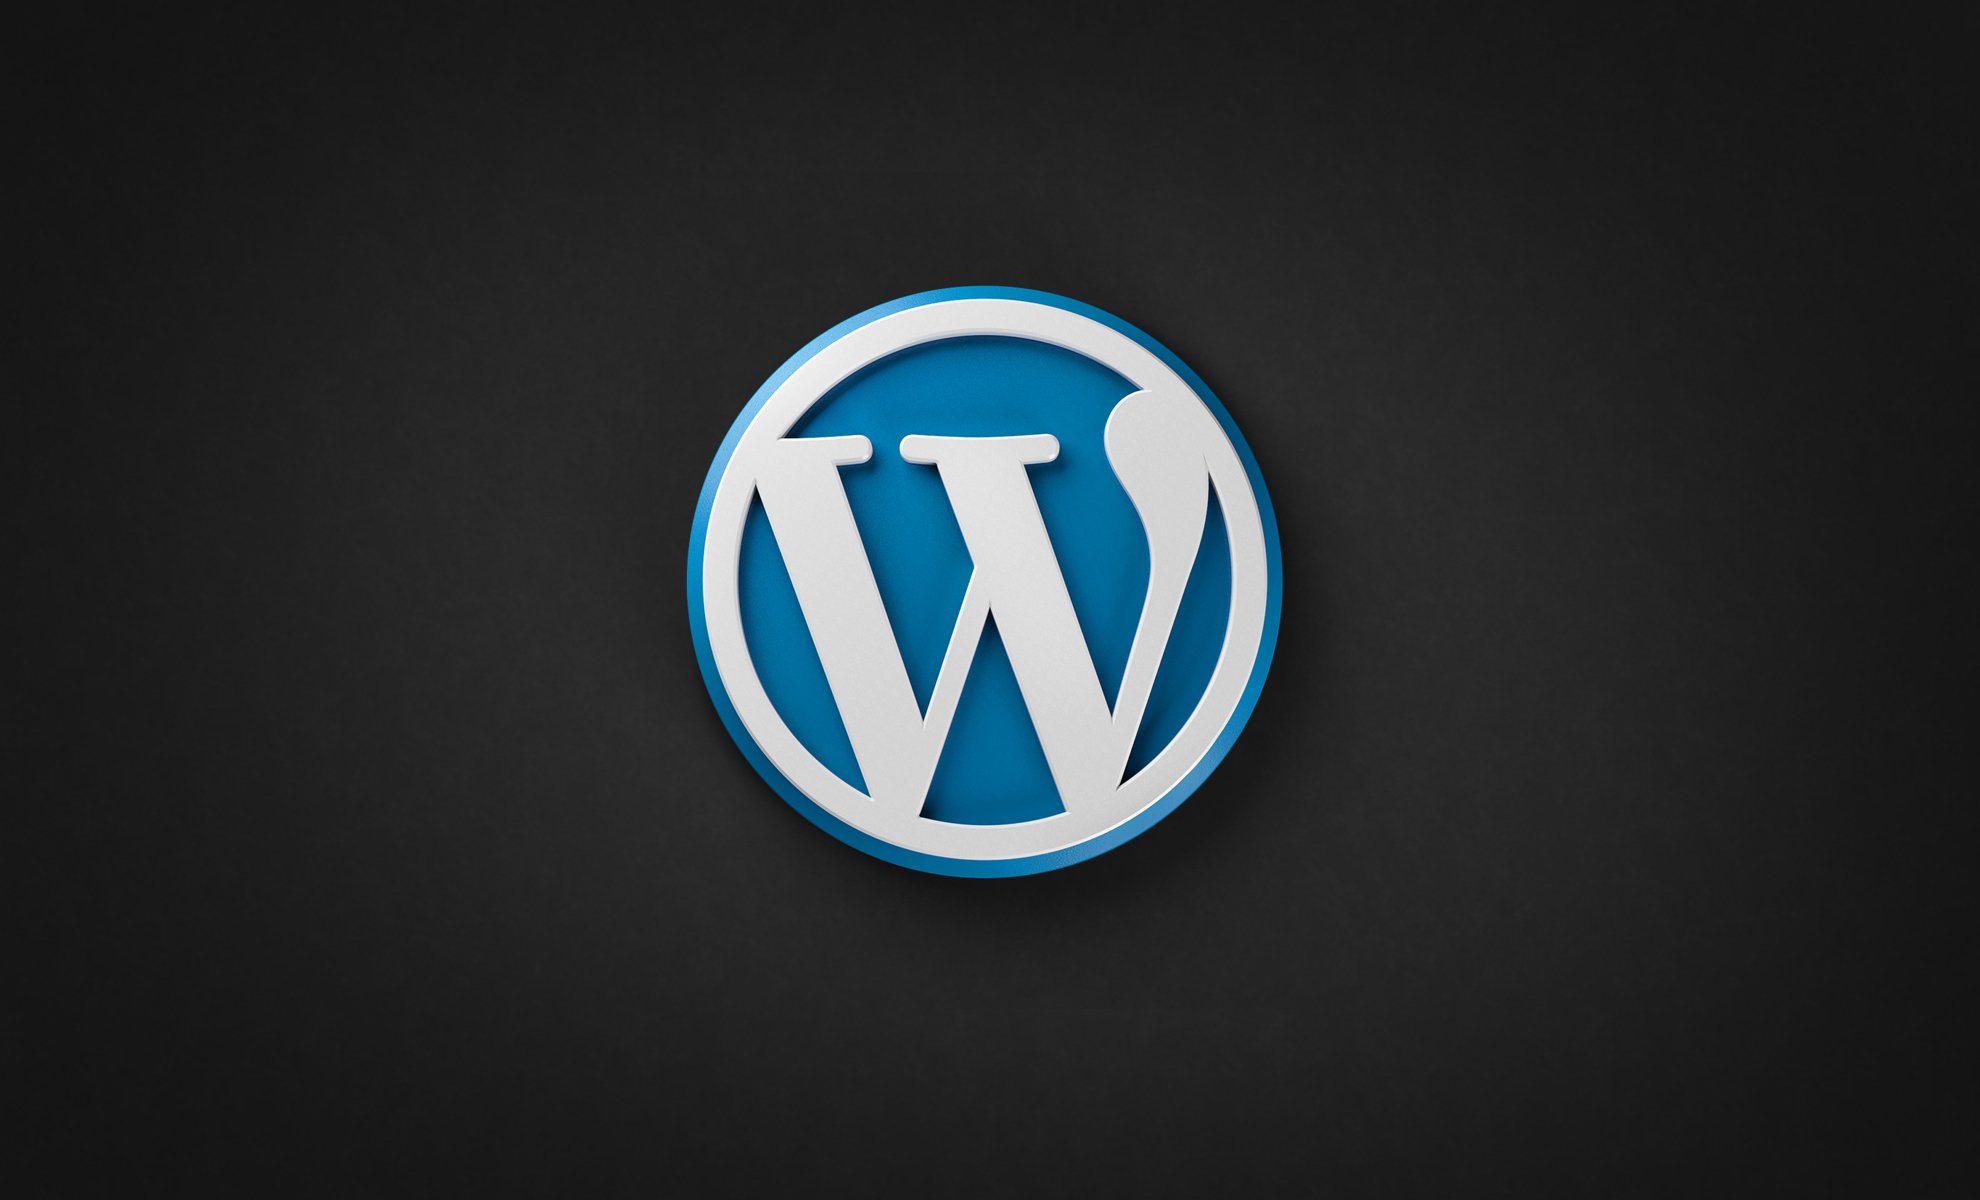 Wordpress your. Вордпресс. WORDPRESS картинки. WORDPRESS лого. WORDPRESS фон.